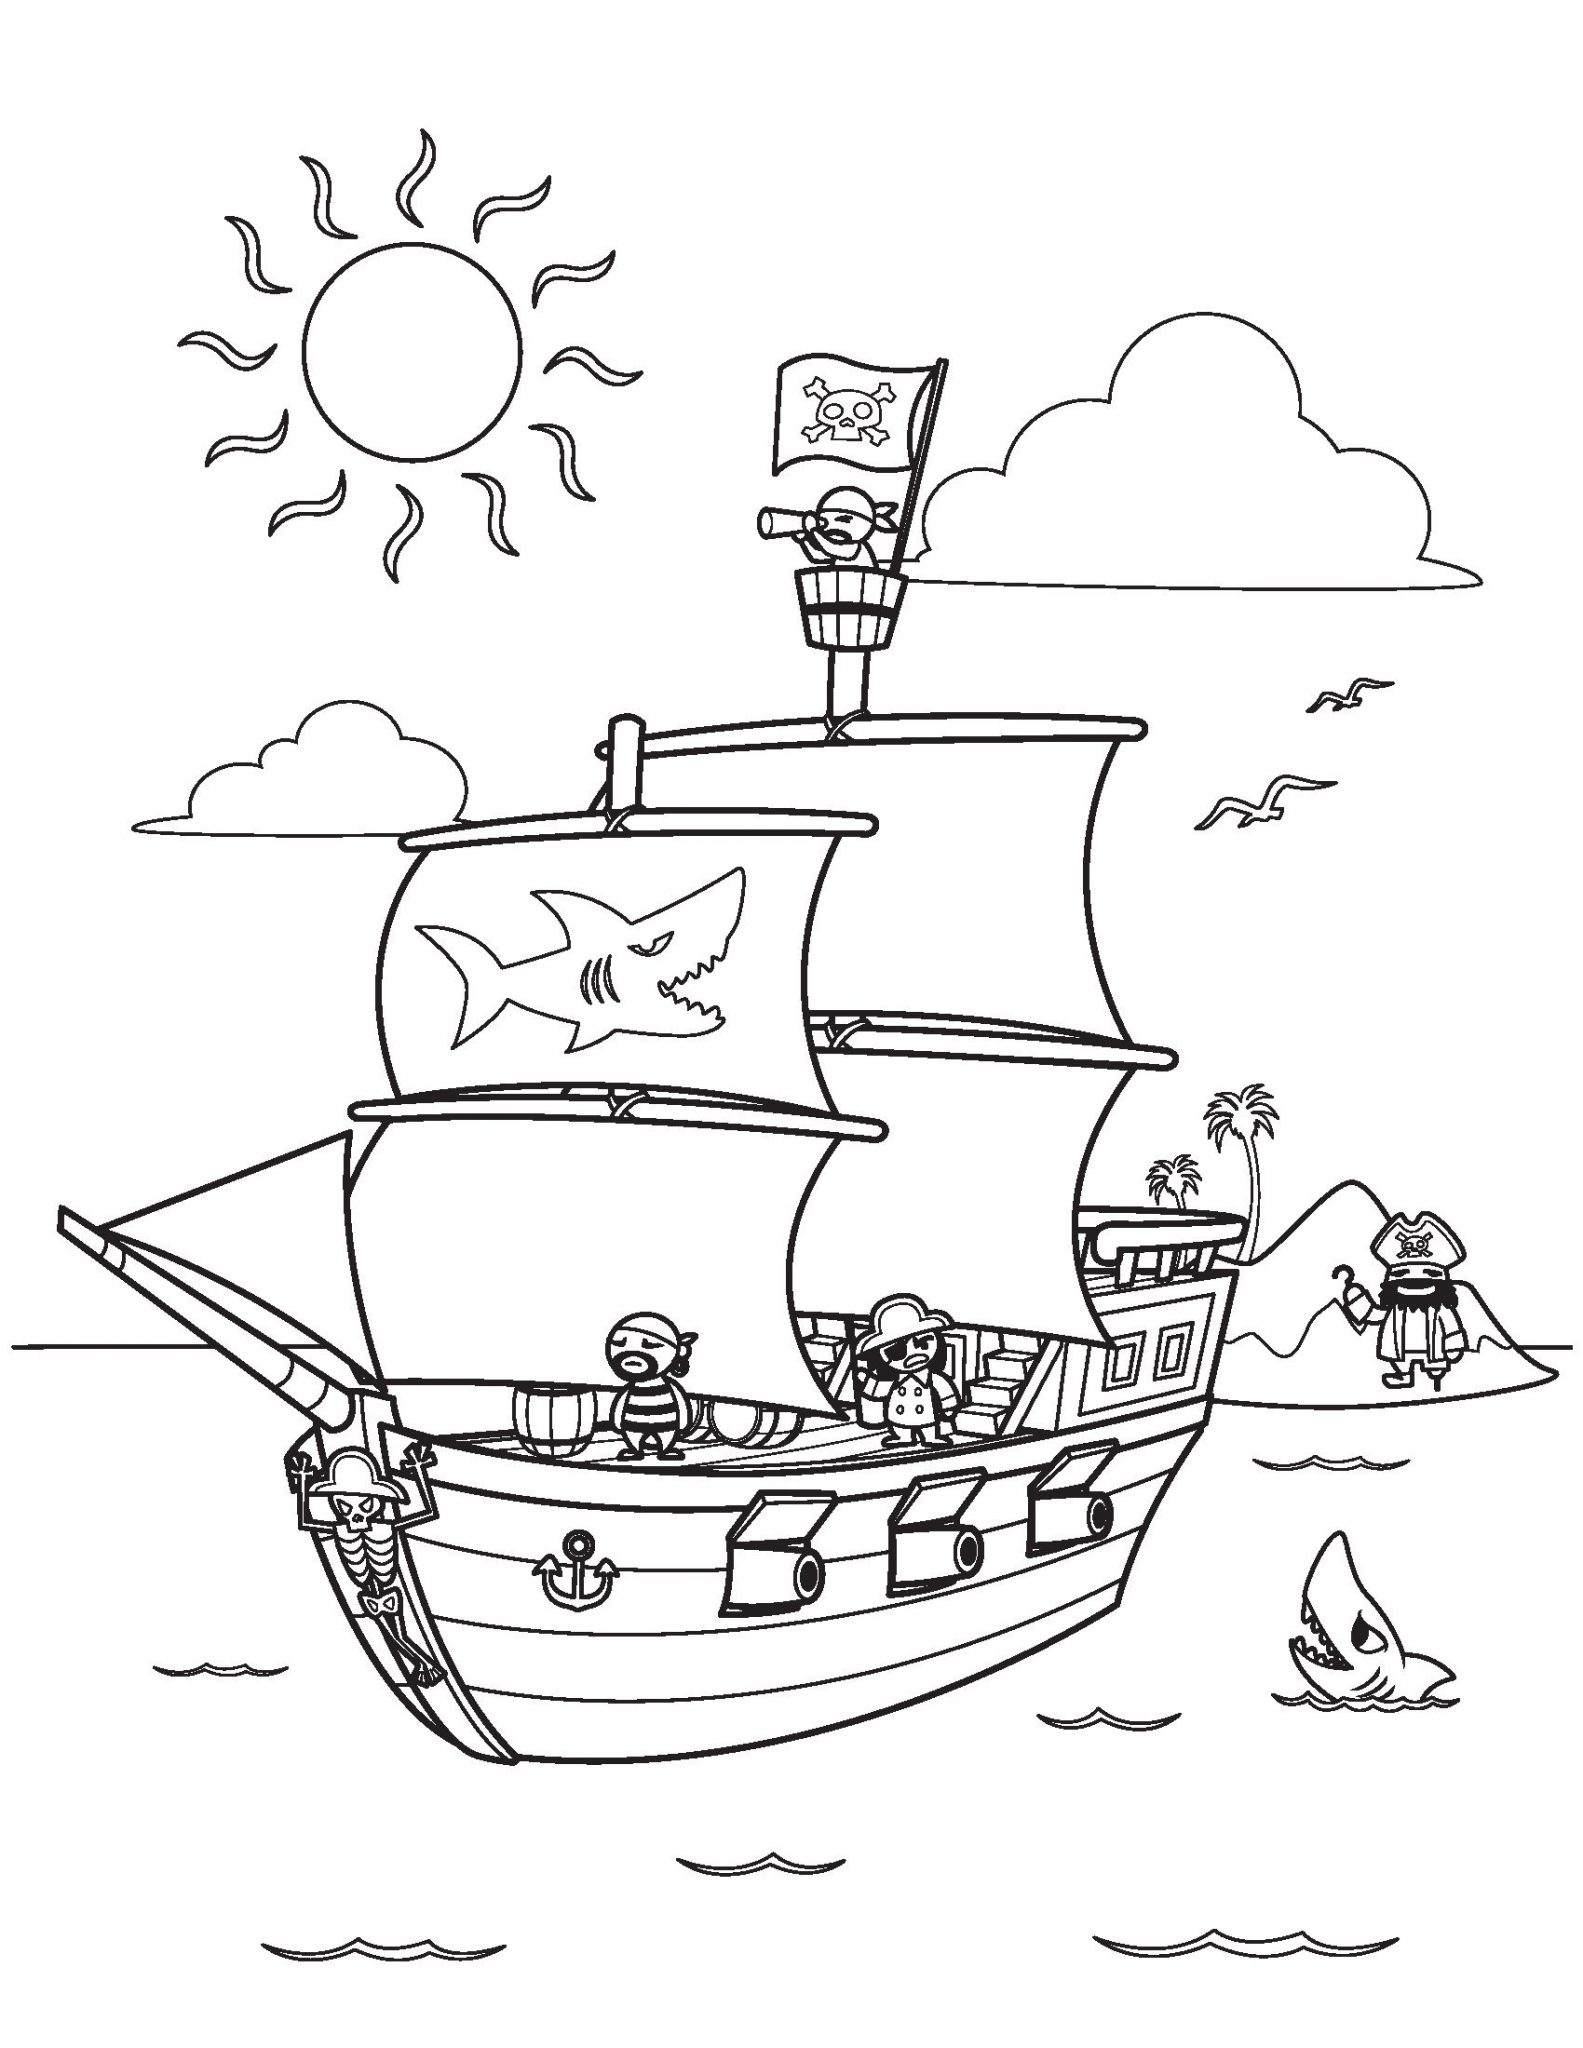 Tranh tô màu con thuyền cướp biển